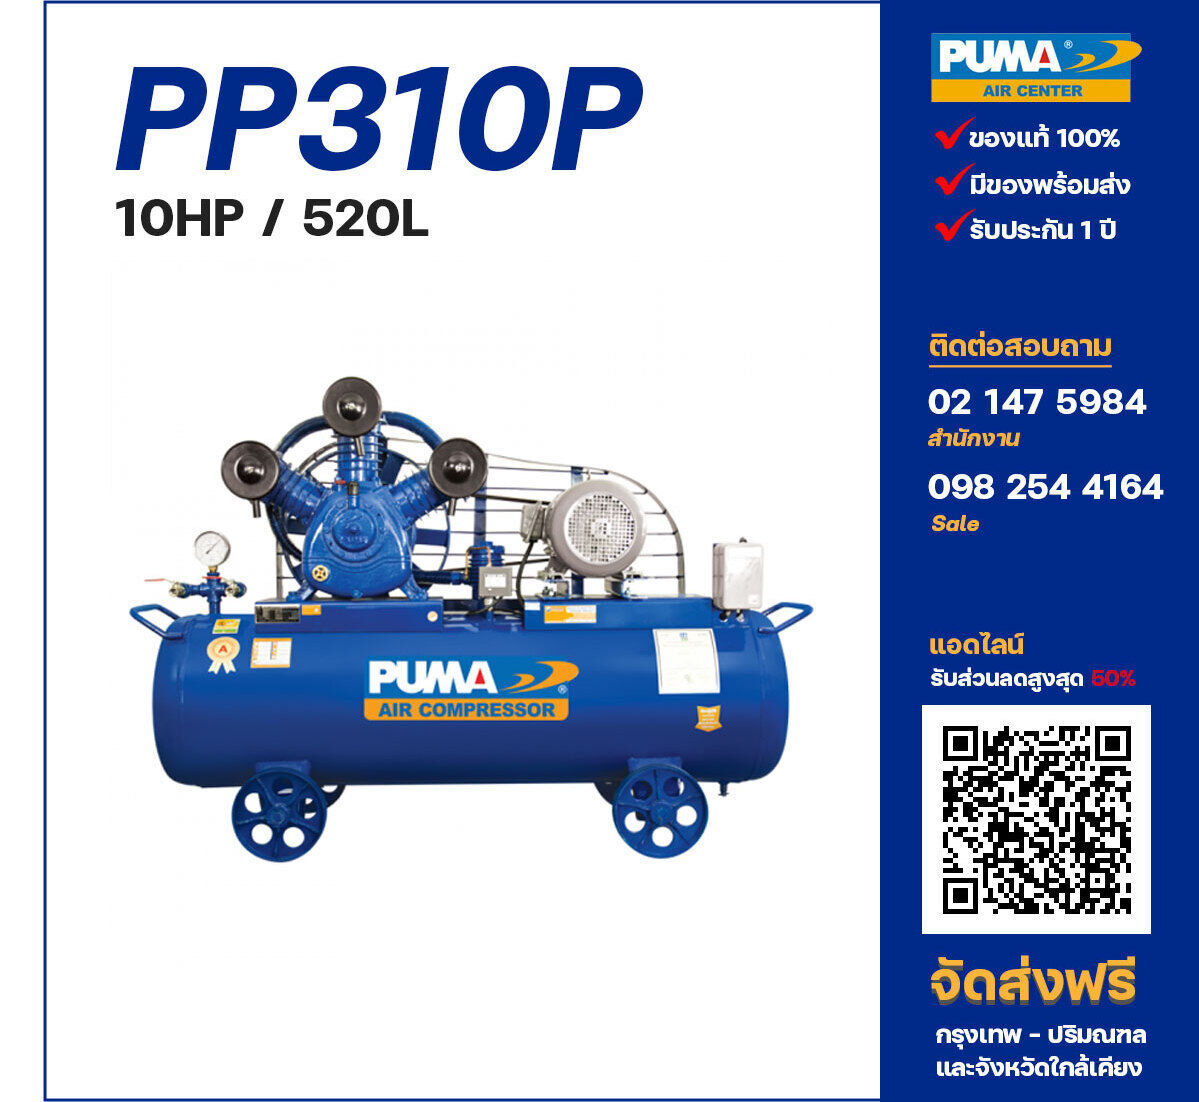 ปั๊มลมพูม่า PUMA PP310P-PPM380V ปั๊มลมลูกสูบ ขนาด 3 สูบ 10 แรงม้า 520 ลิตร PUMA พร้อมมอเตอร์ PUMA ไฟ 380V ส่งฟรี กรุงเทพฯ-ปริมณฑล รับประกัน 1 ปี